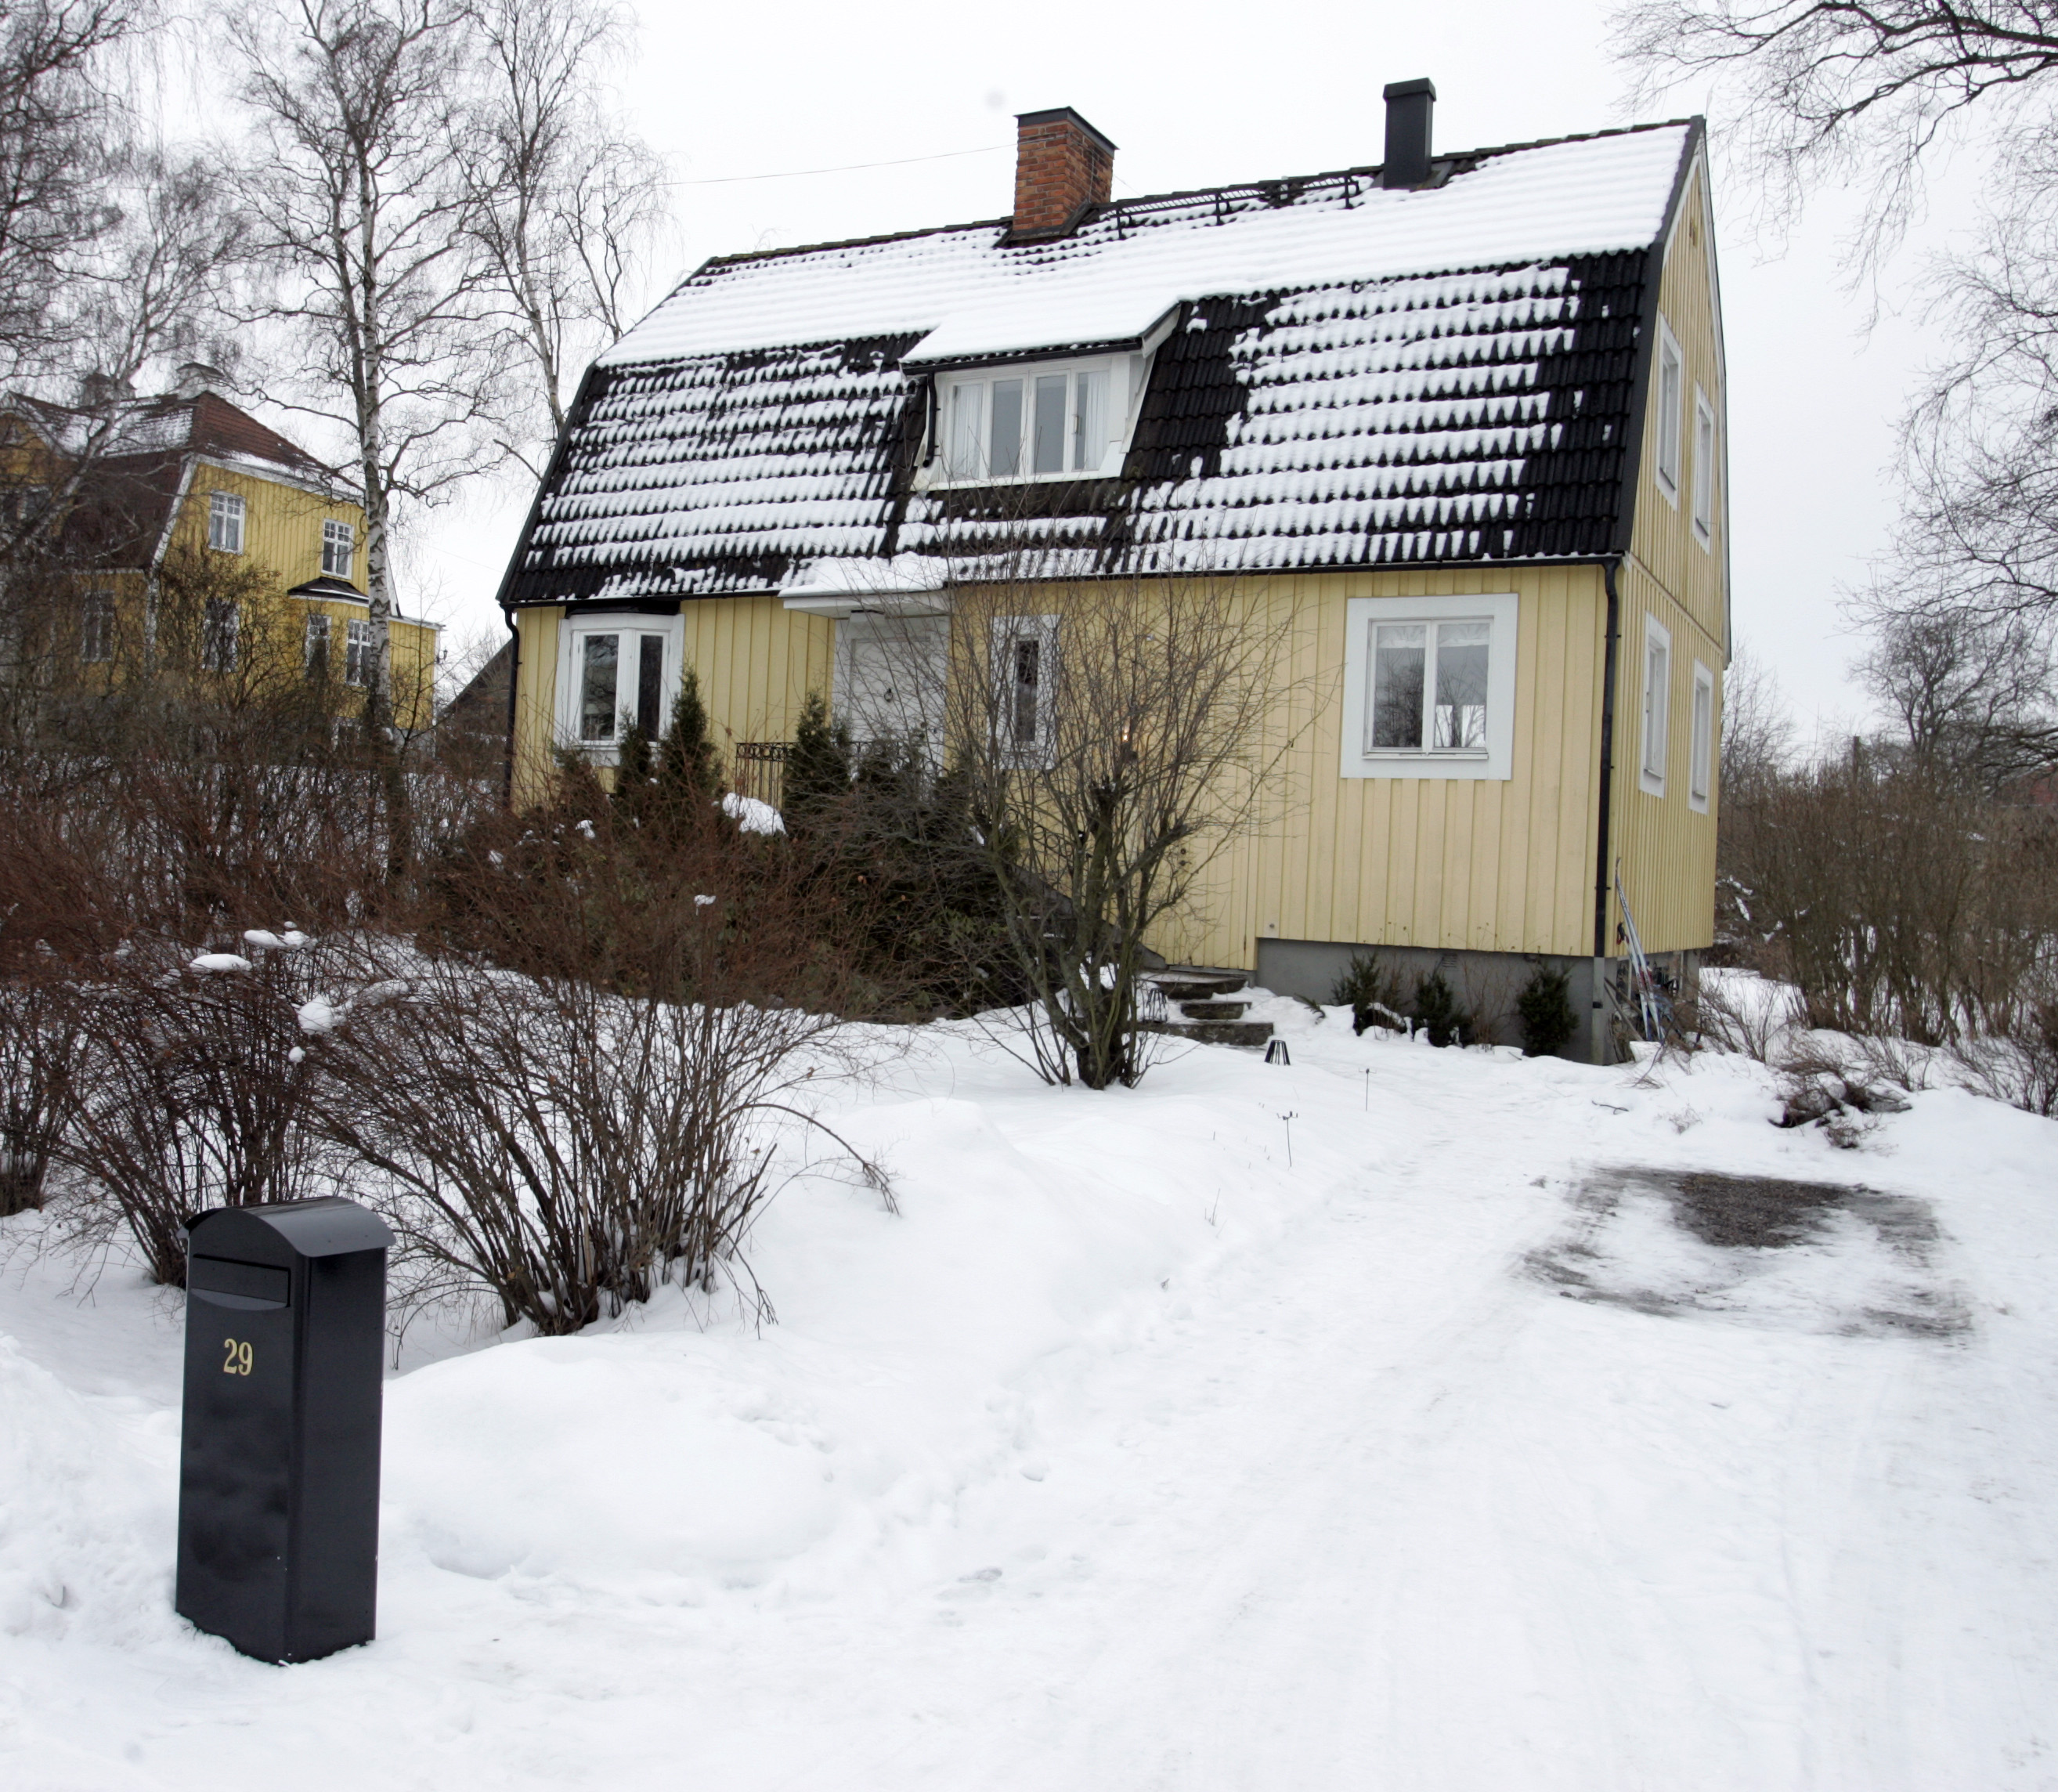 Bergström växte upp i den här gula villan...